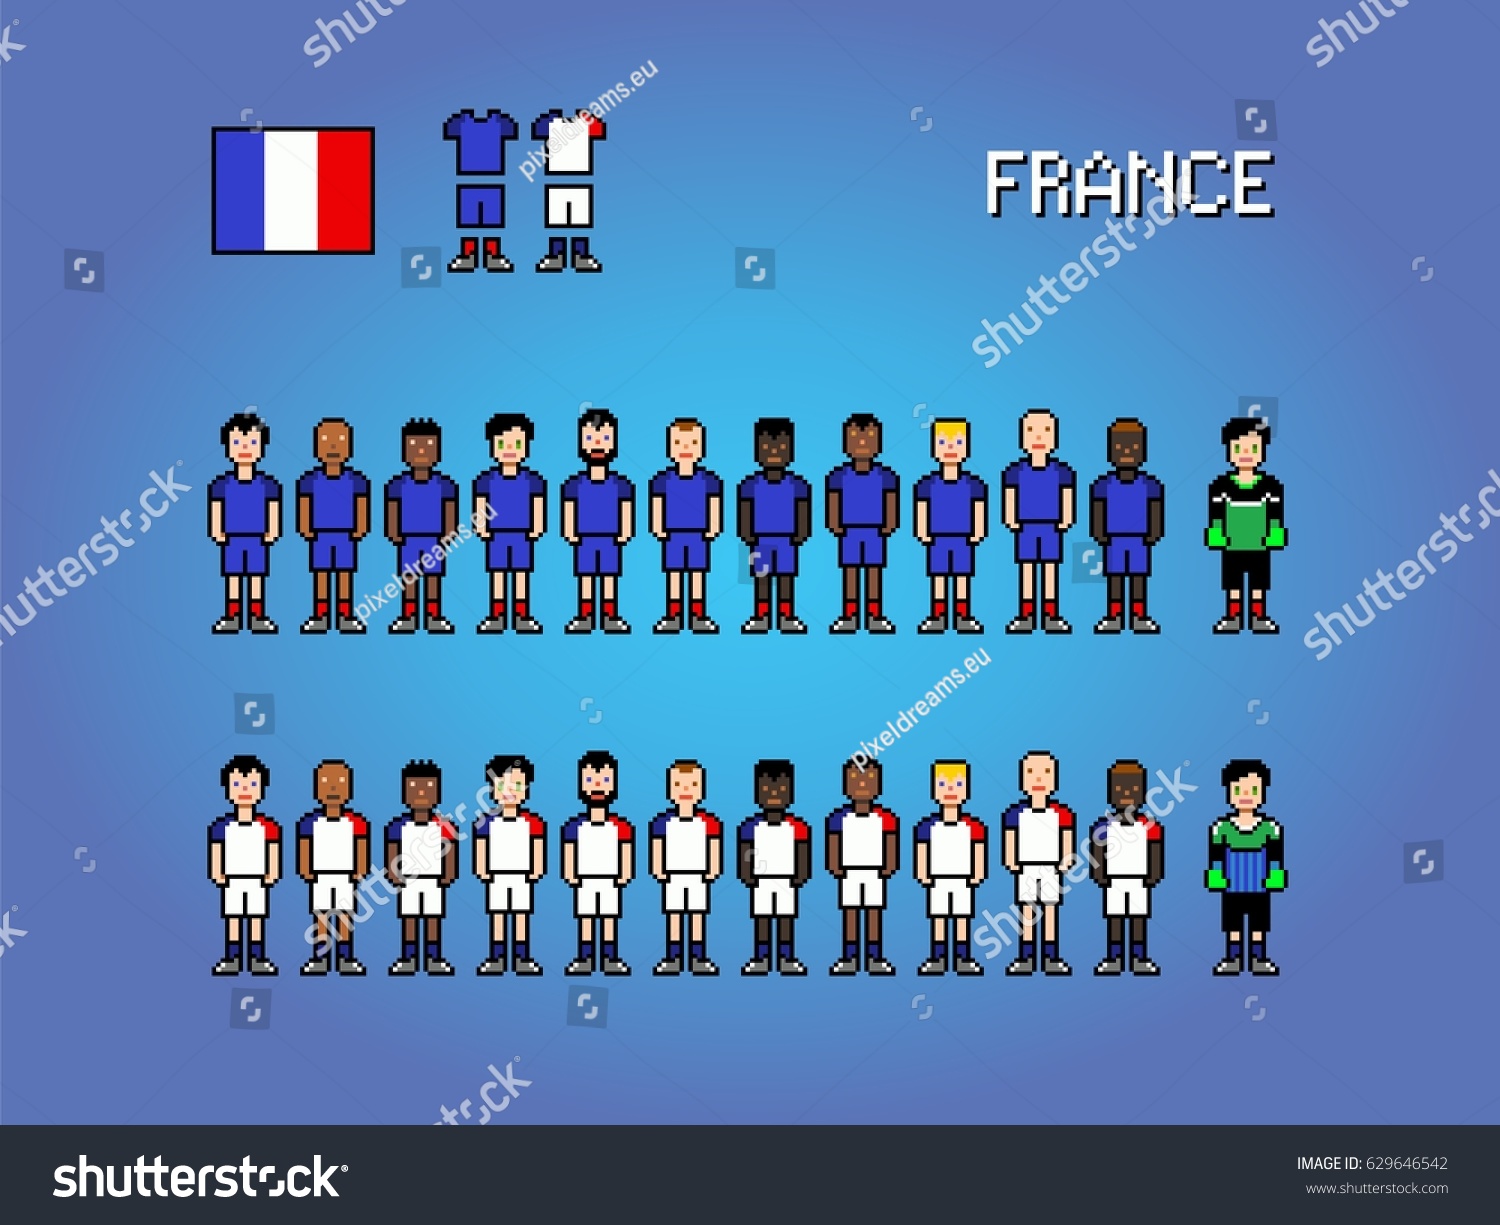 Image Vectorielle De Stock De France National Football Team